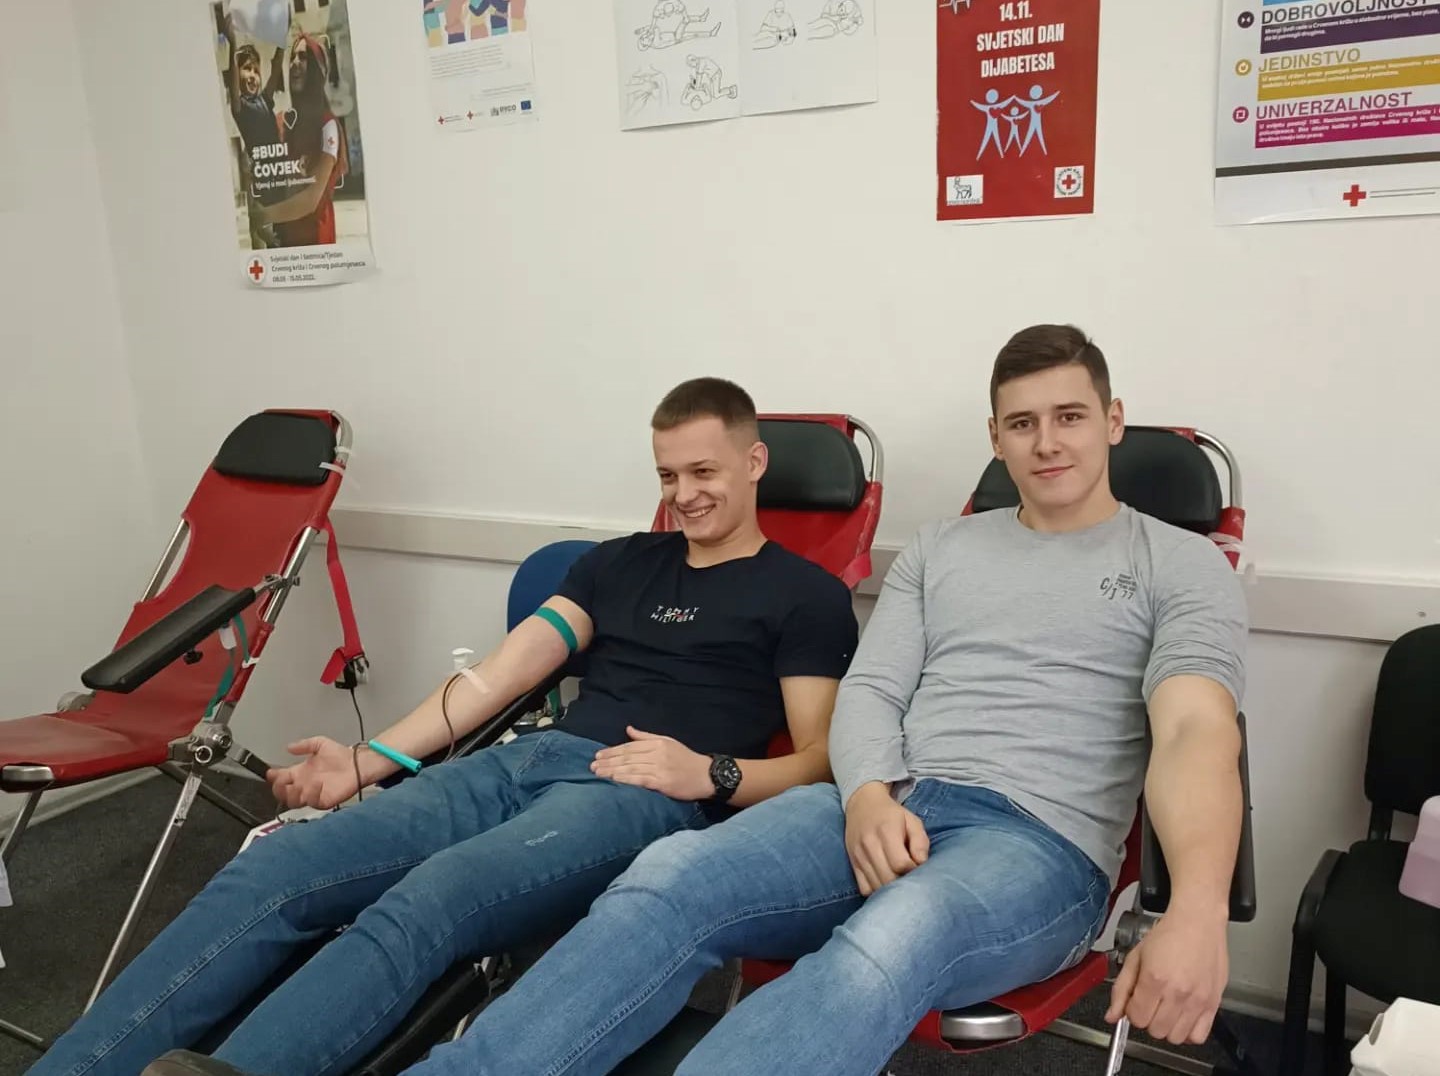 (FOTO) TRAVNIK / Uspješno realizovana akcija dobrovoljnog darivanja krvi